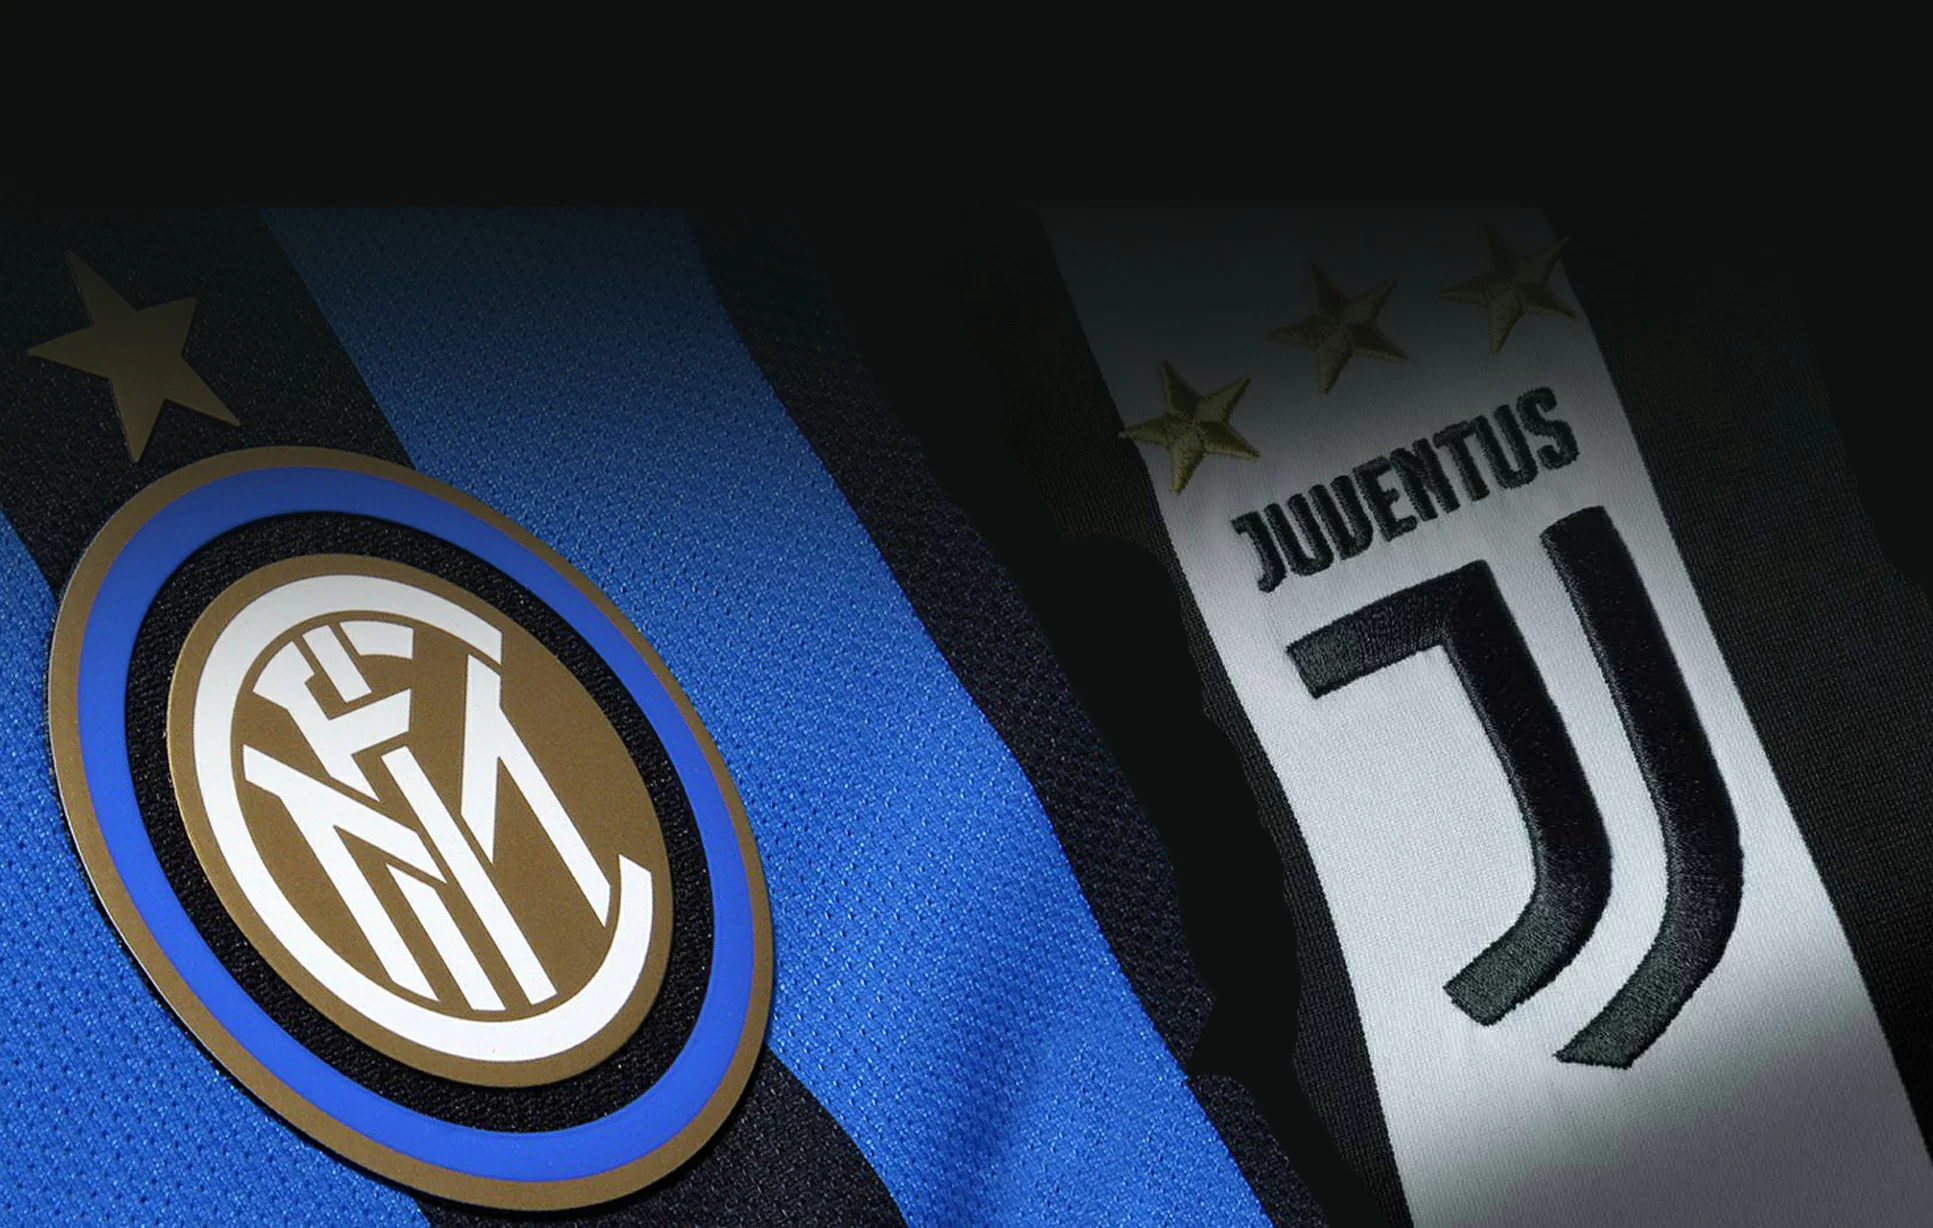 Juve e Inter: Natale a duello, ma il calendario sorride ai nerazzurri